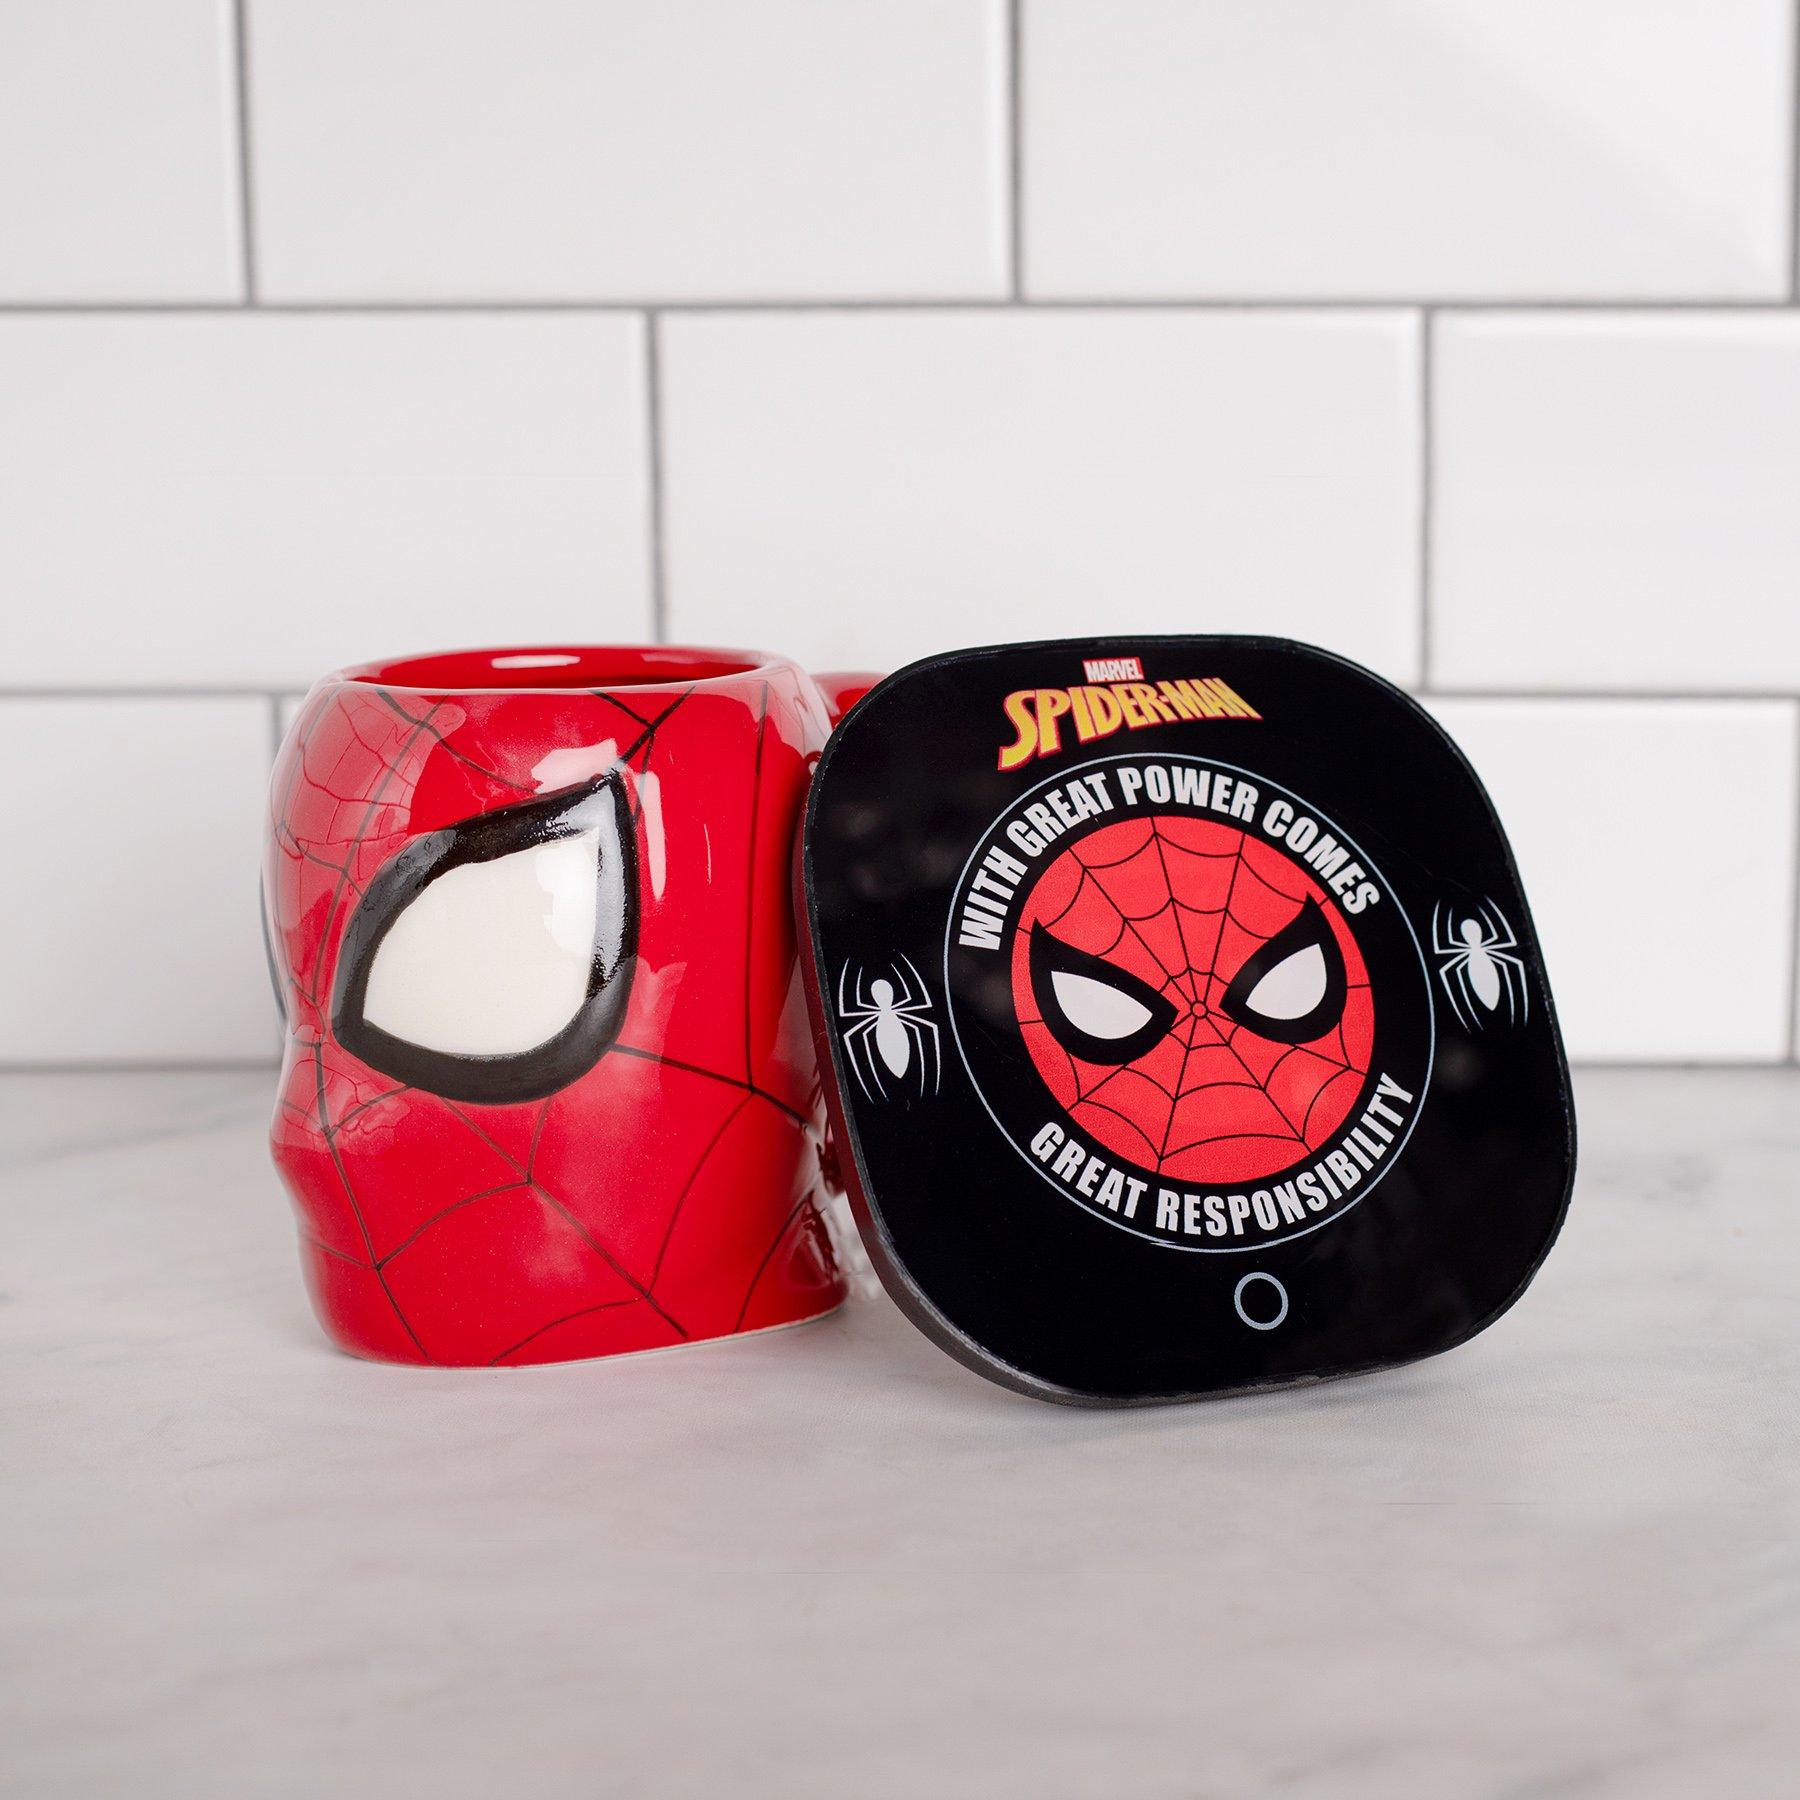 Boxlunch Marvel What If? Mug Warmer With Mug